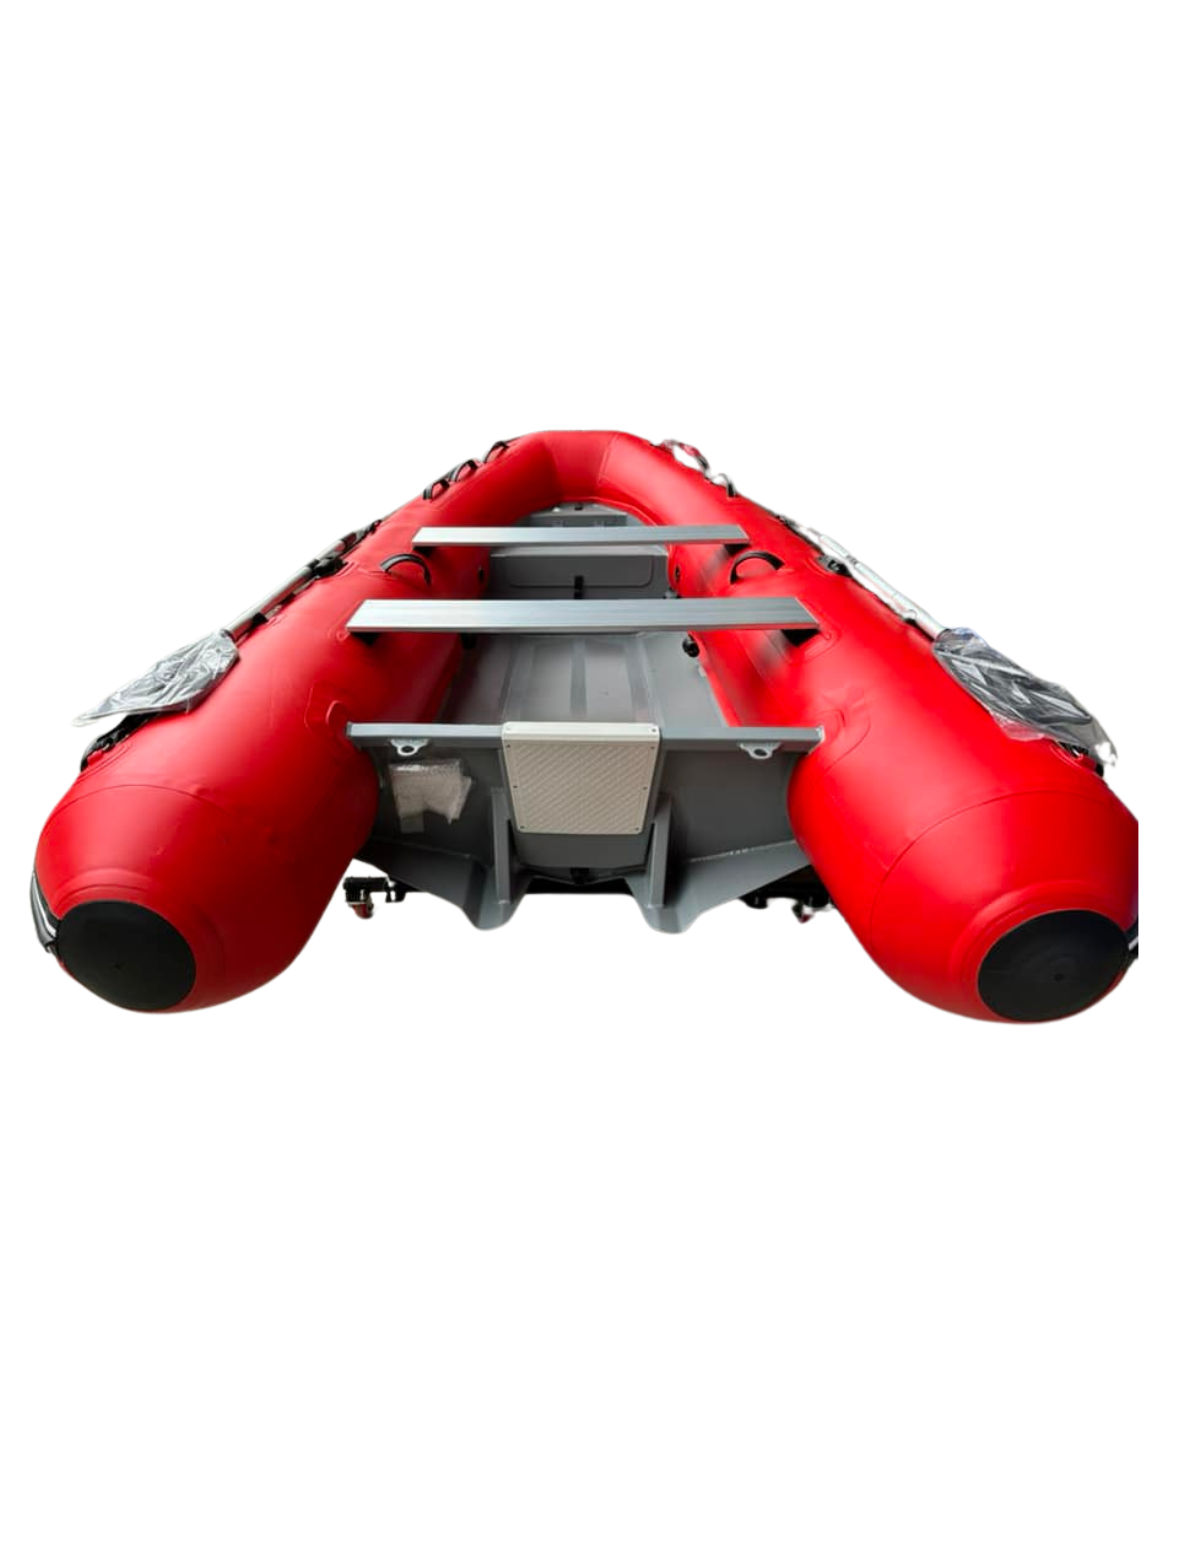 DELTA AL330 Rigid Inflatable Boat